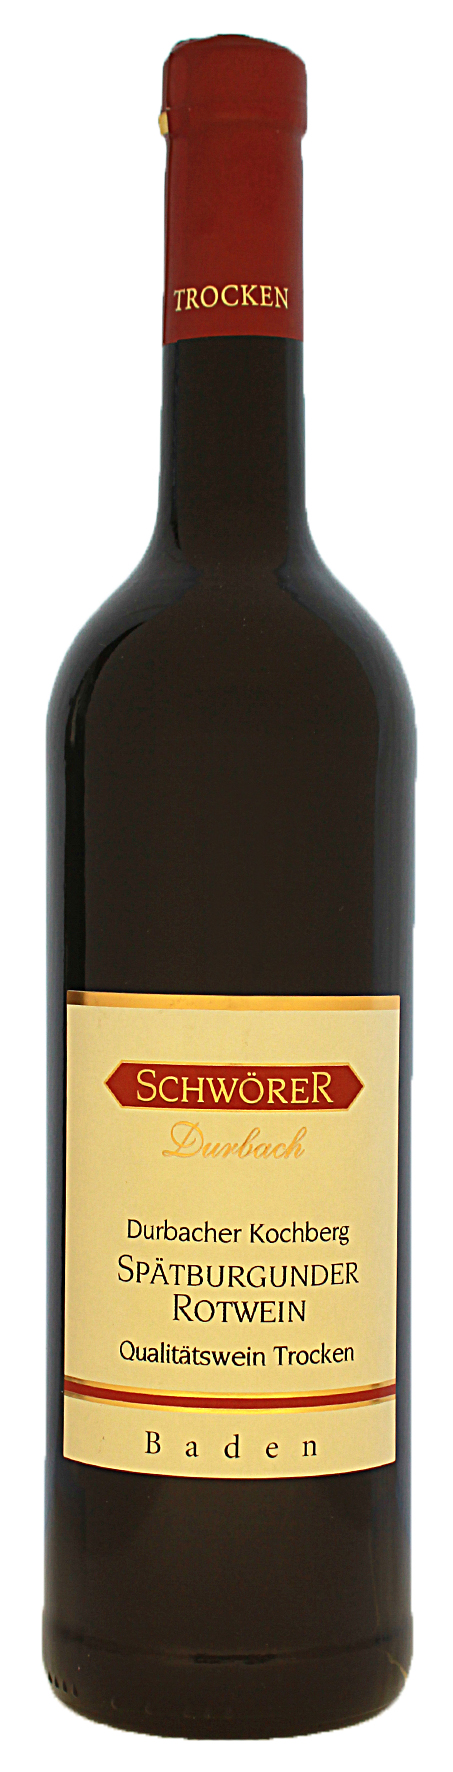 Durbacher Kochberg Spätburgnder Rotwein trocken Weingut Schwörer Durbach 2018